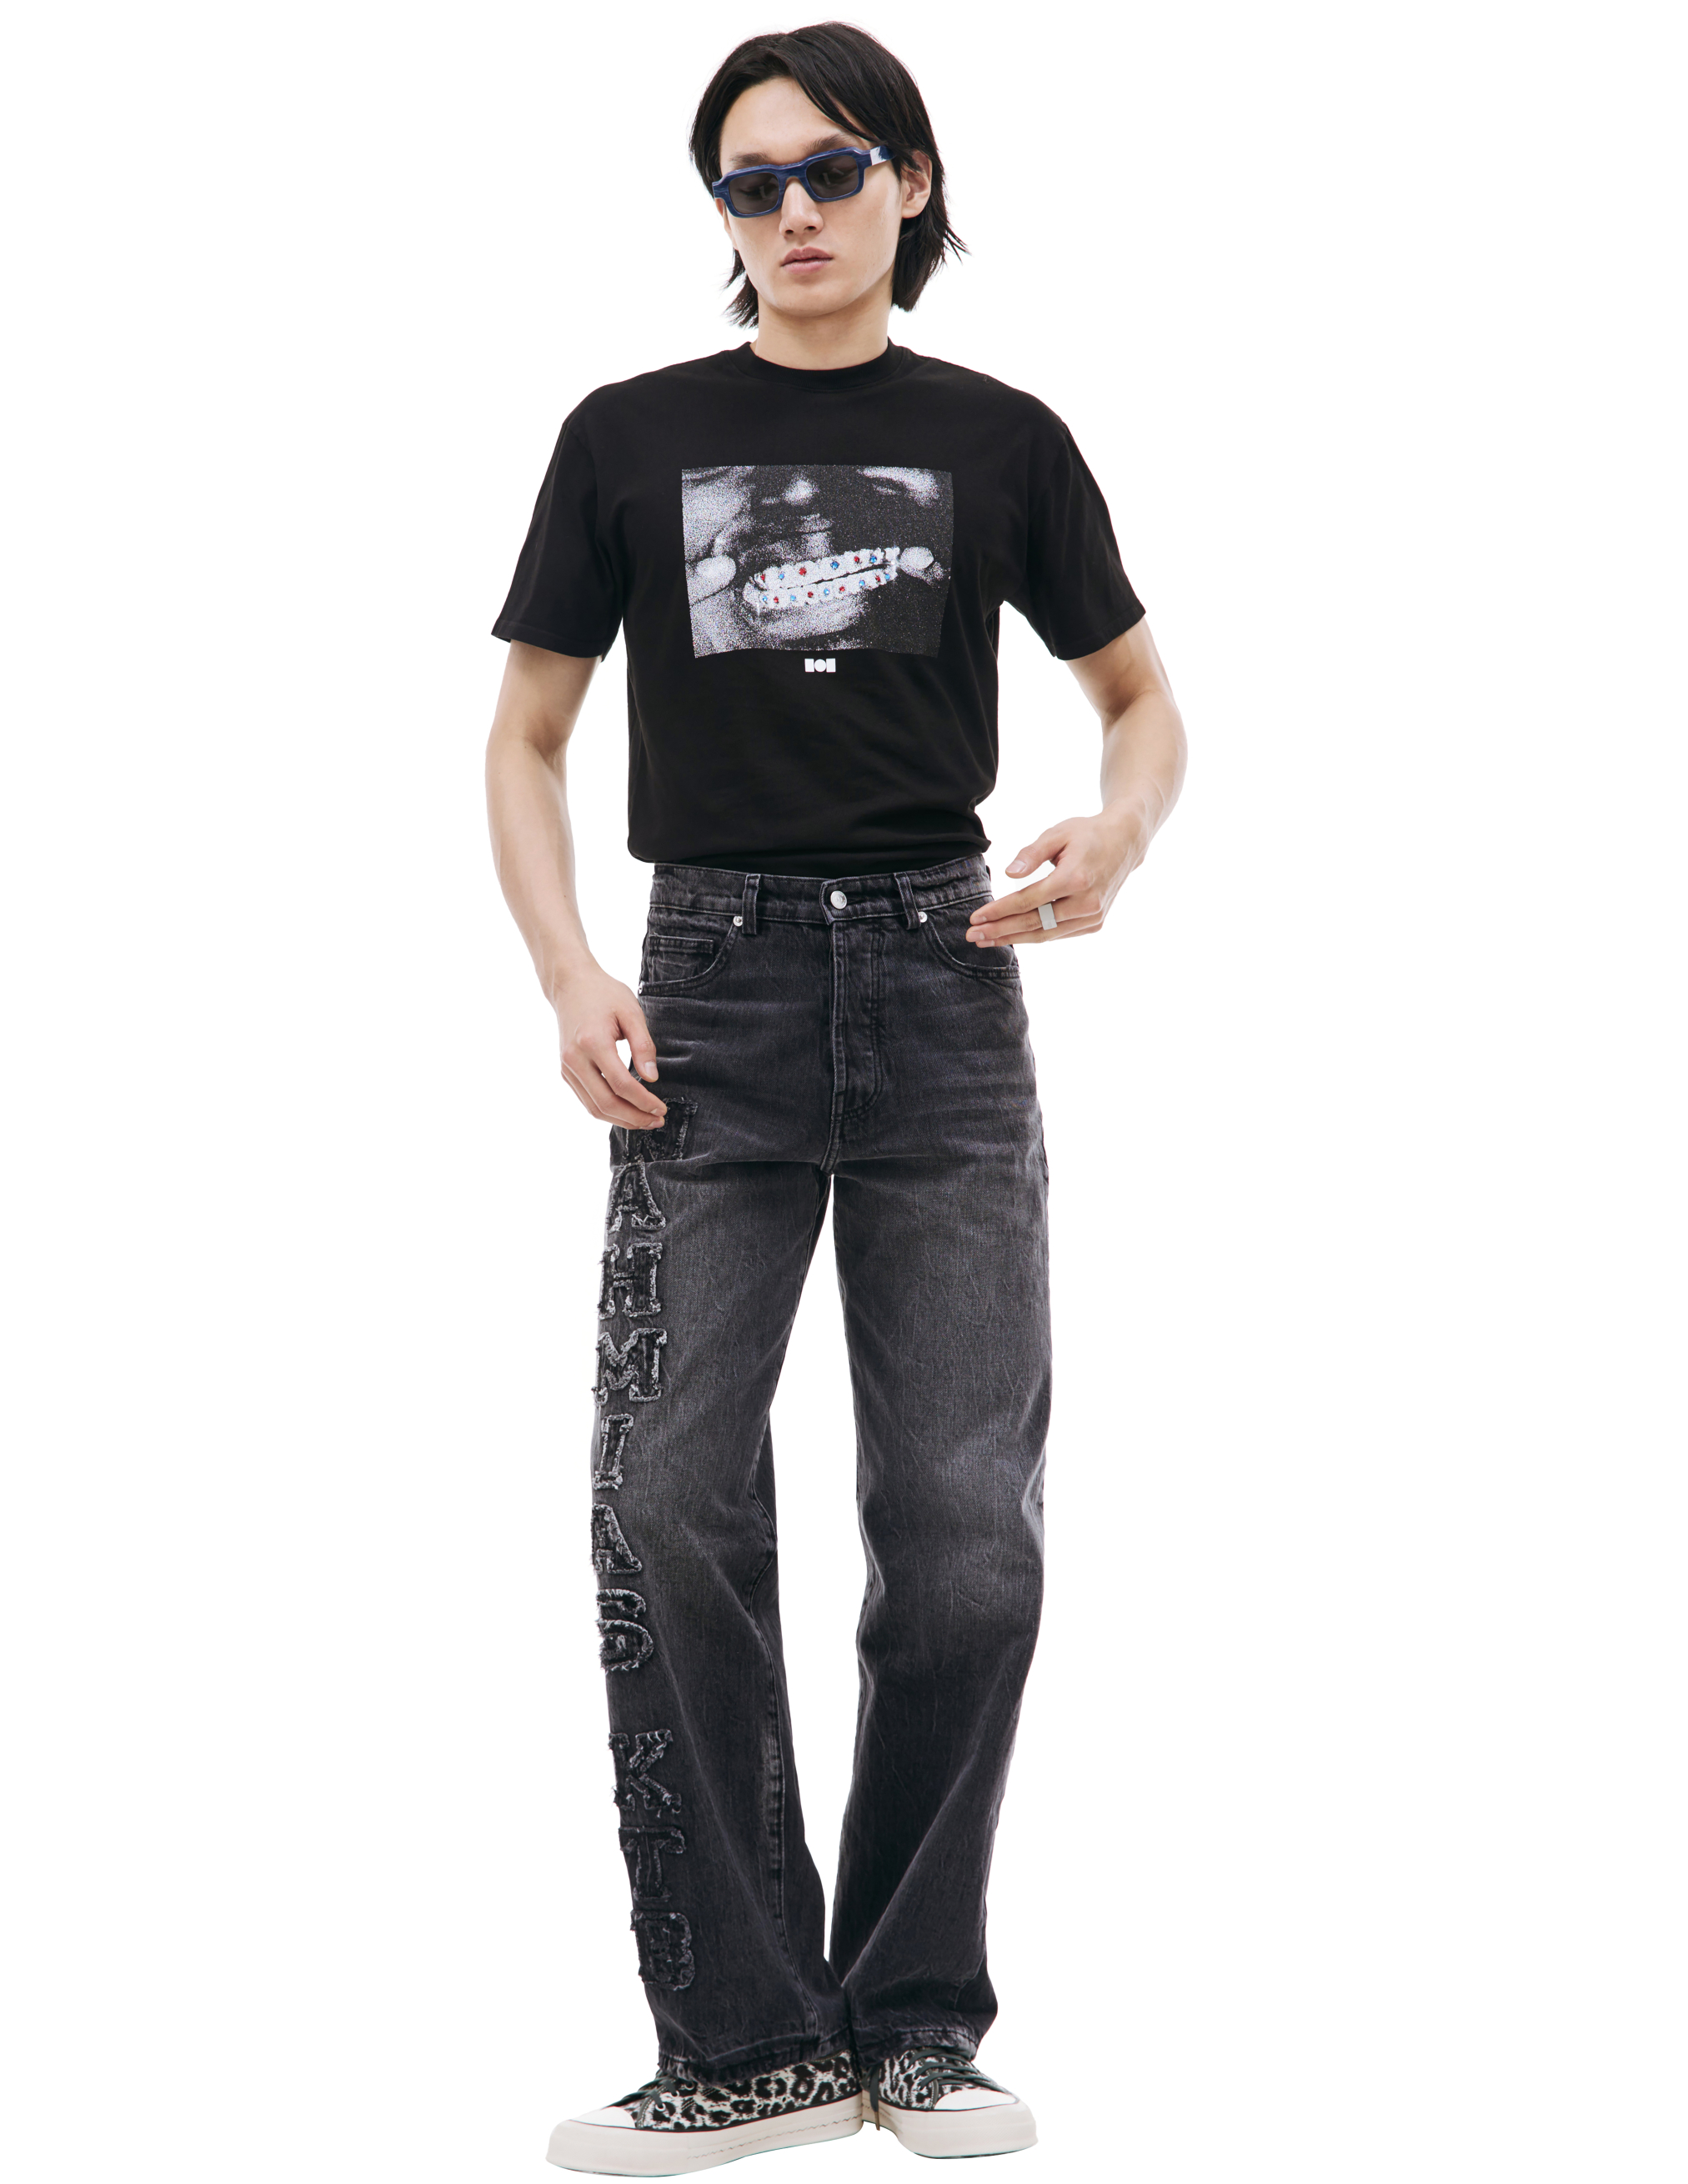 Сервые джинсы с нашивками логотипа Nahmias AW23-D6-P29-980, размер 30;32;34